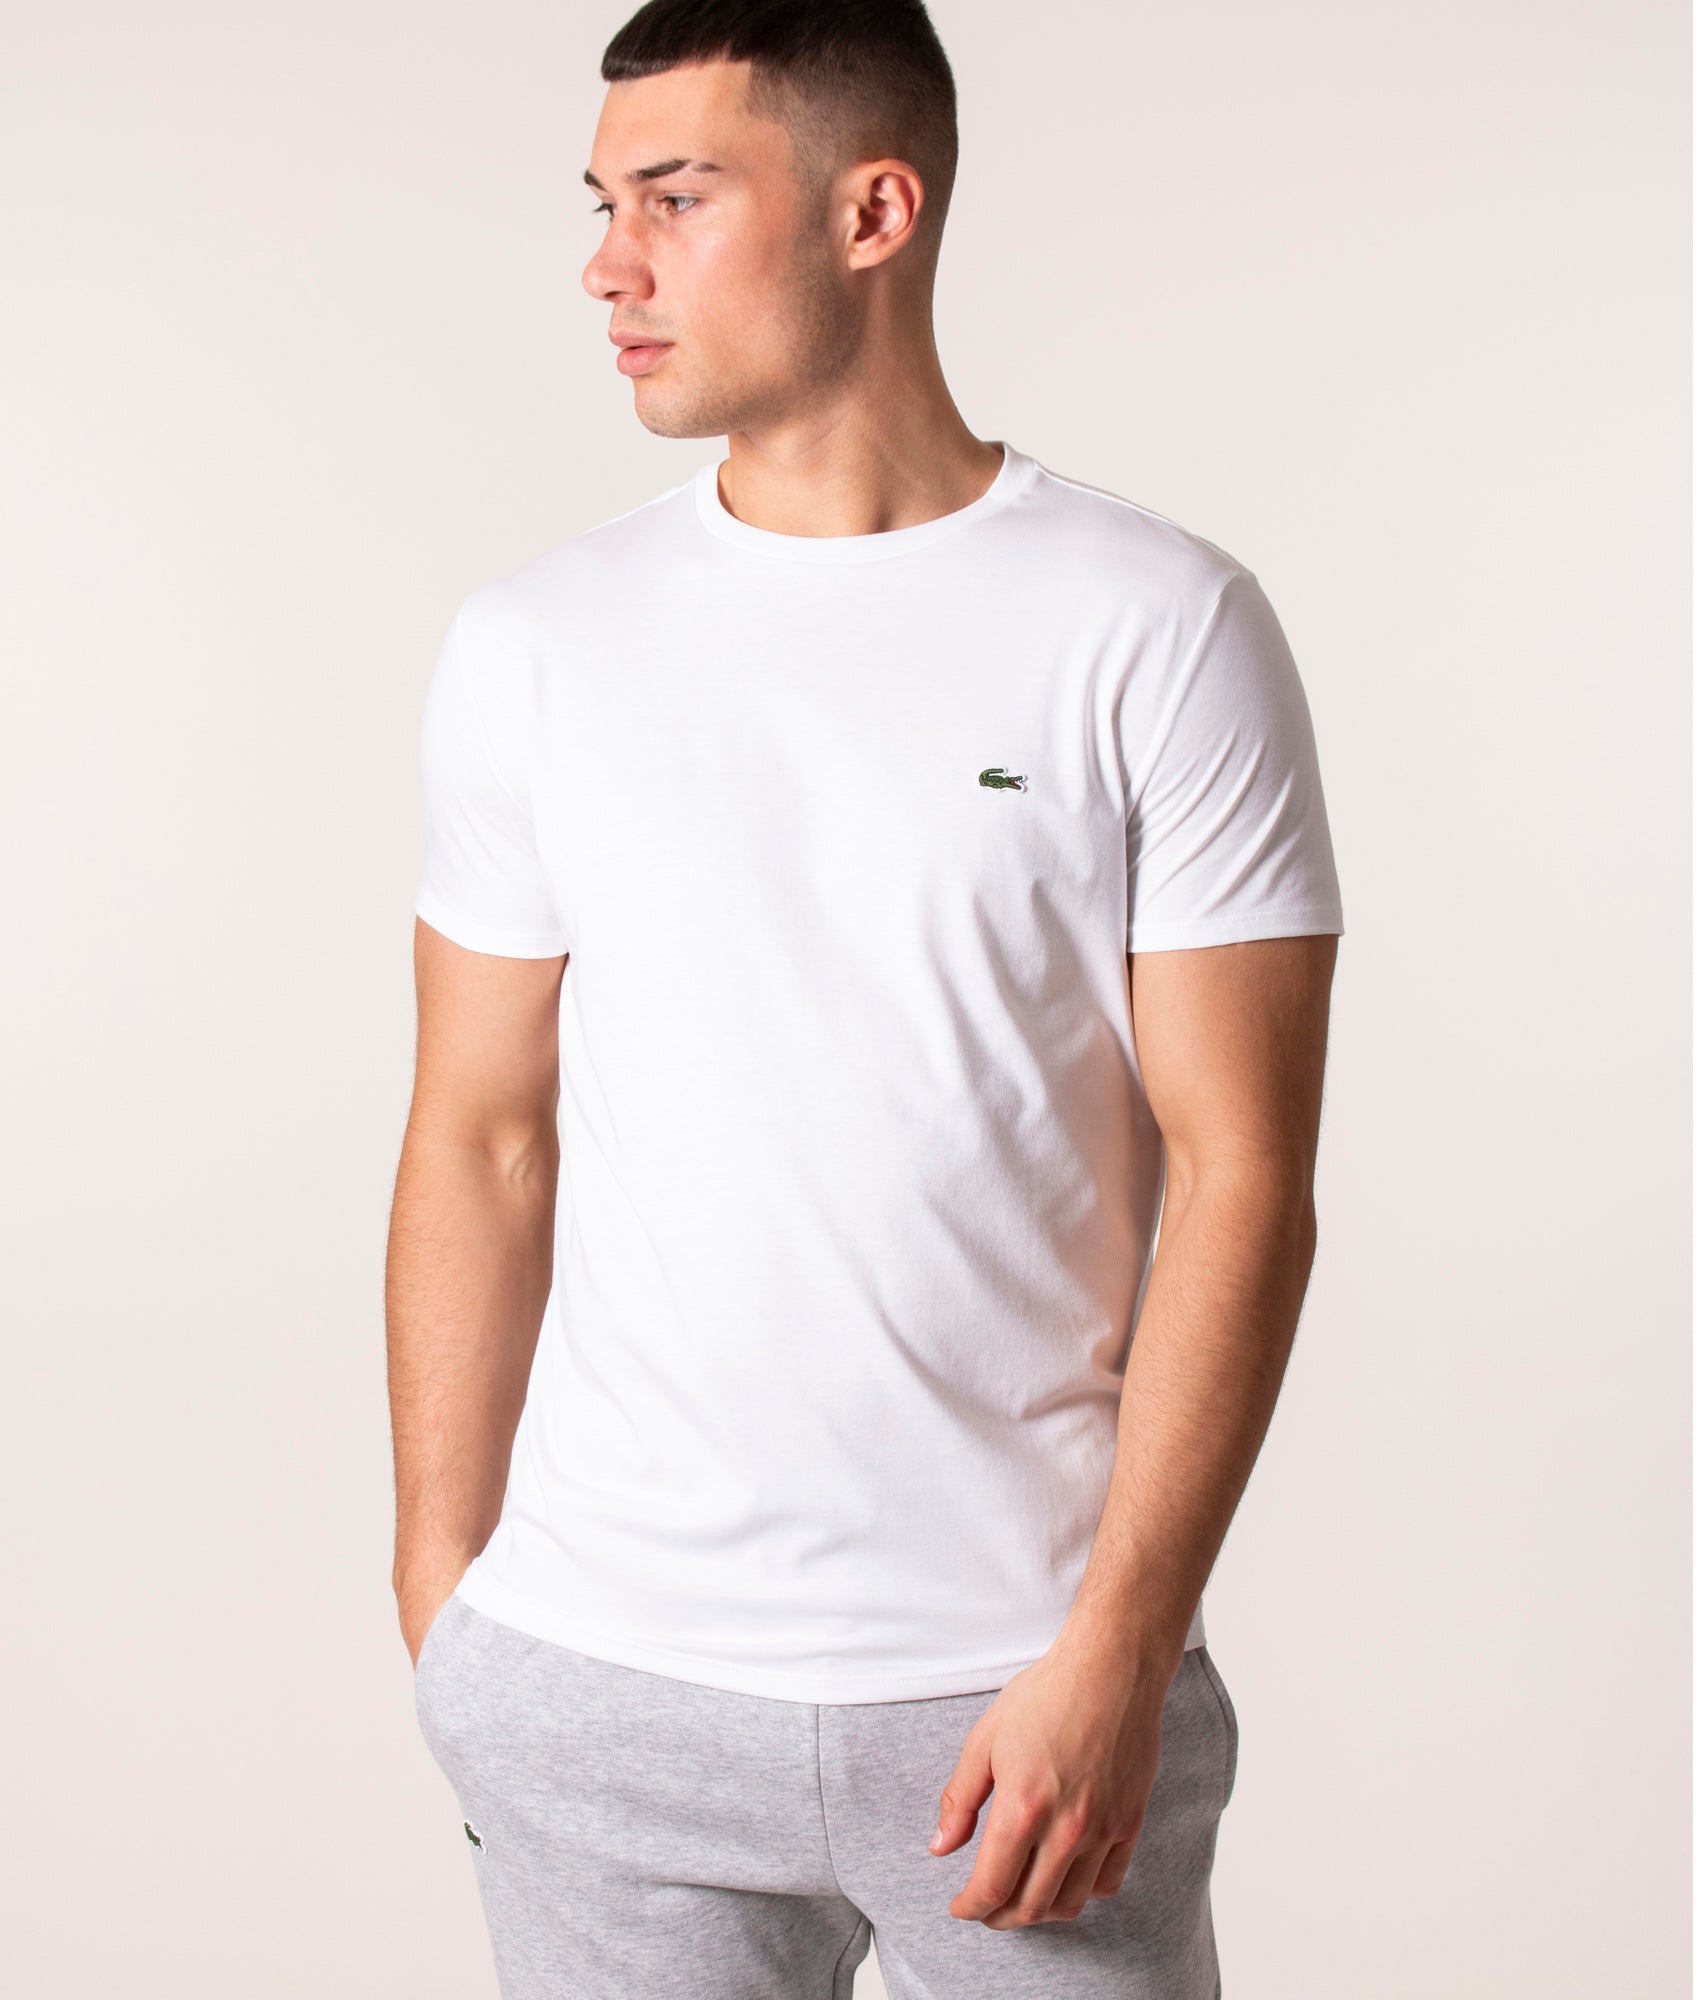 Lacoste Mens Pima Cotton Croc Logo T-Shirt - Colour: 001 White - Size: 6/XL